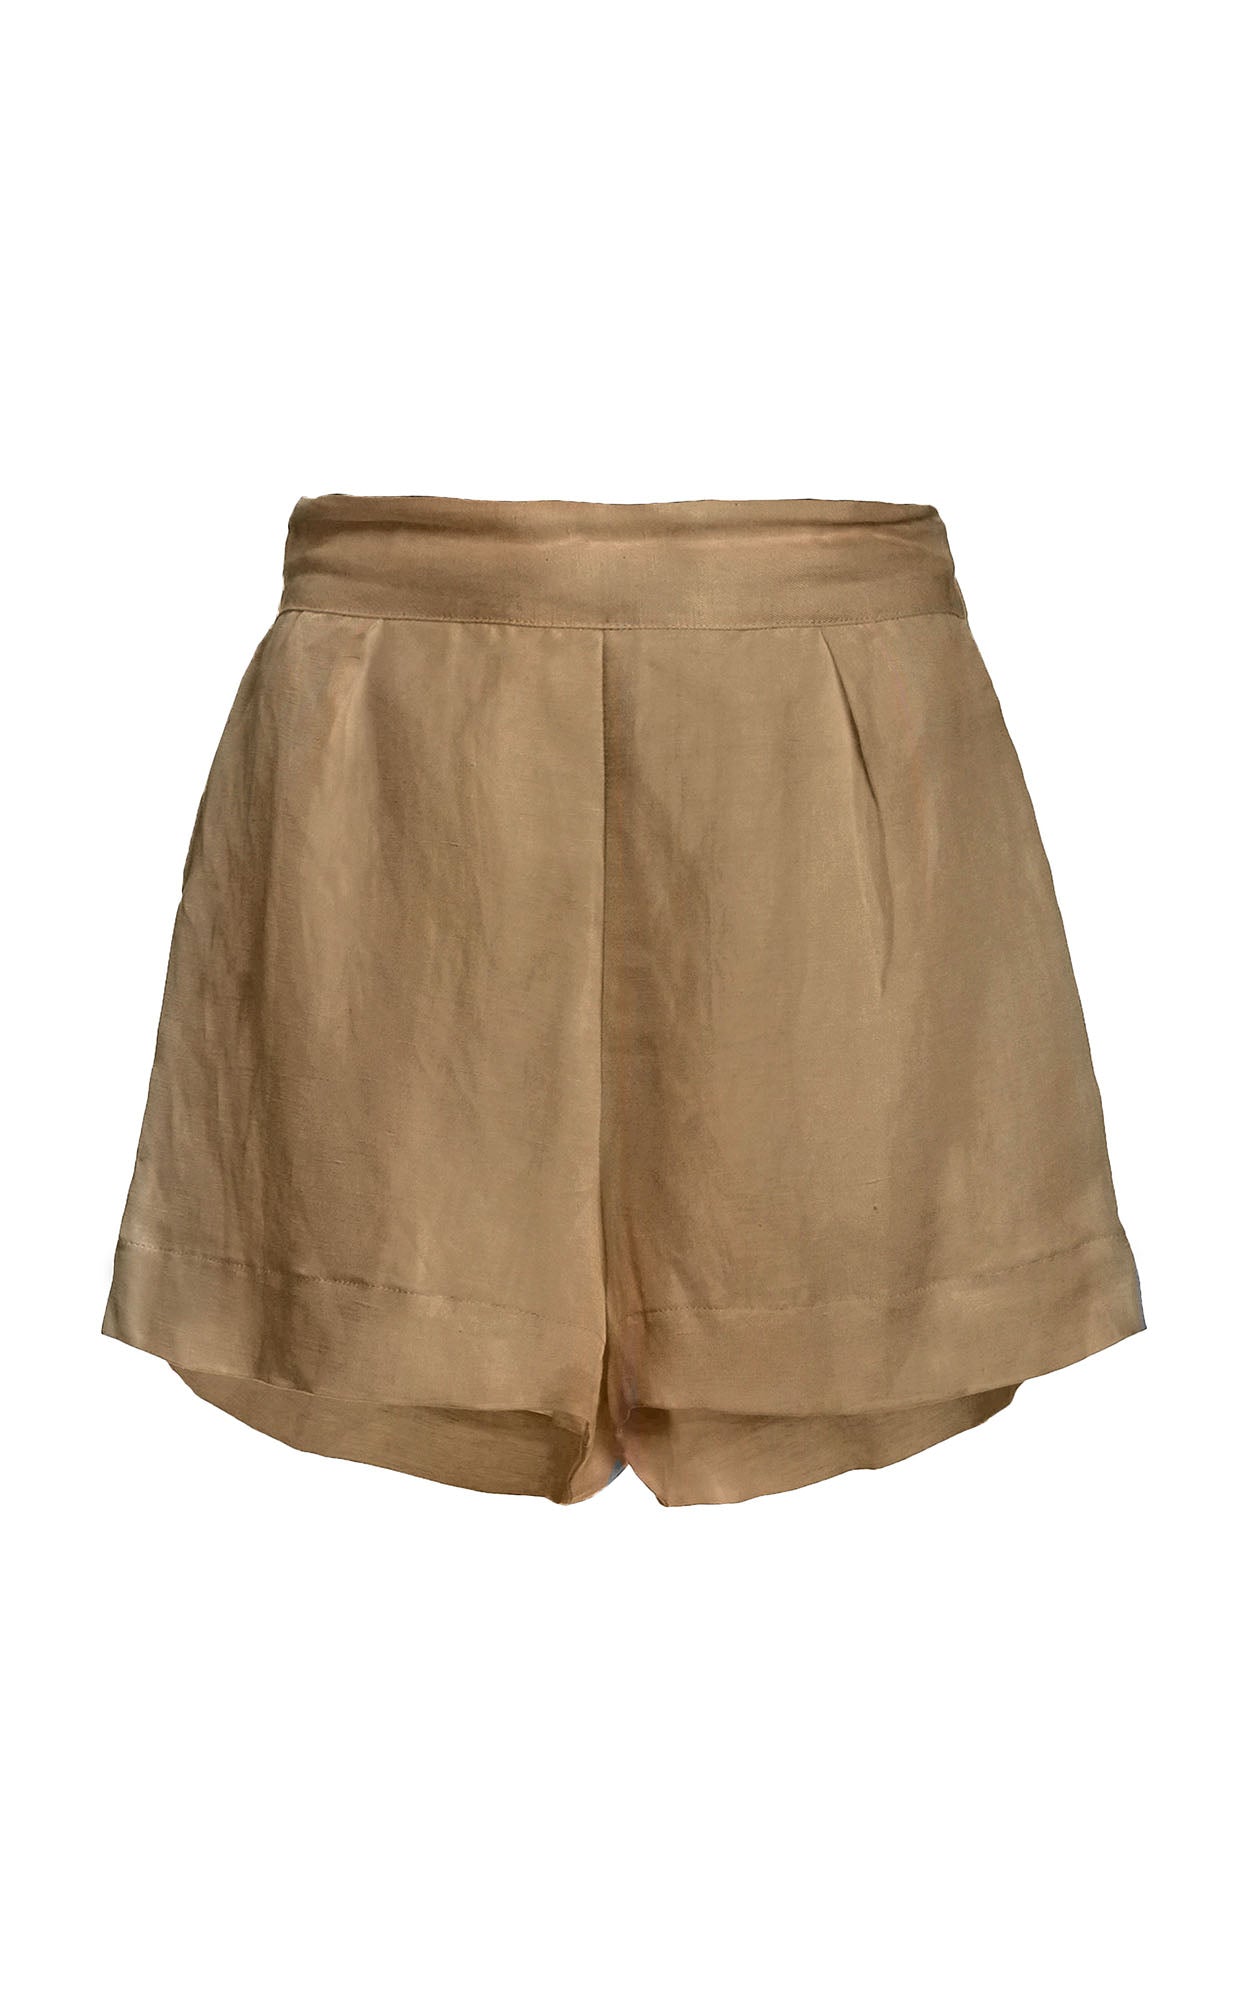 The High-Waist Short Short in Linen Cupro – Anemos